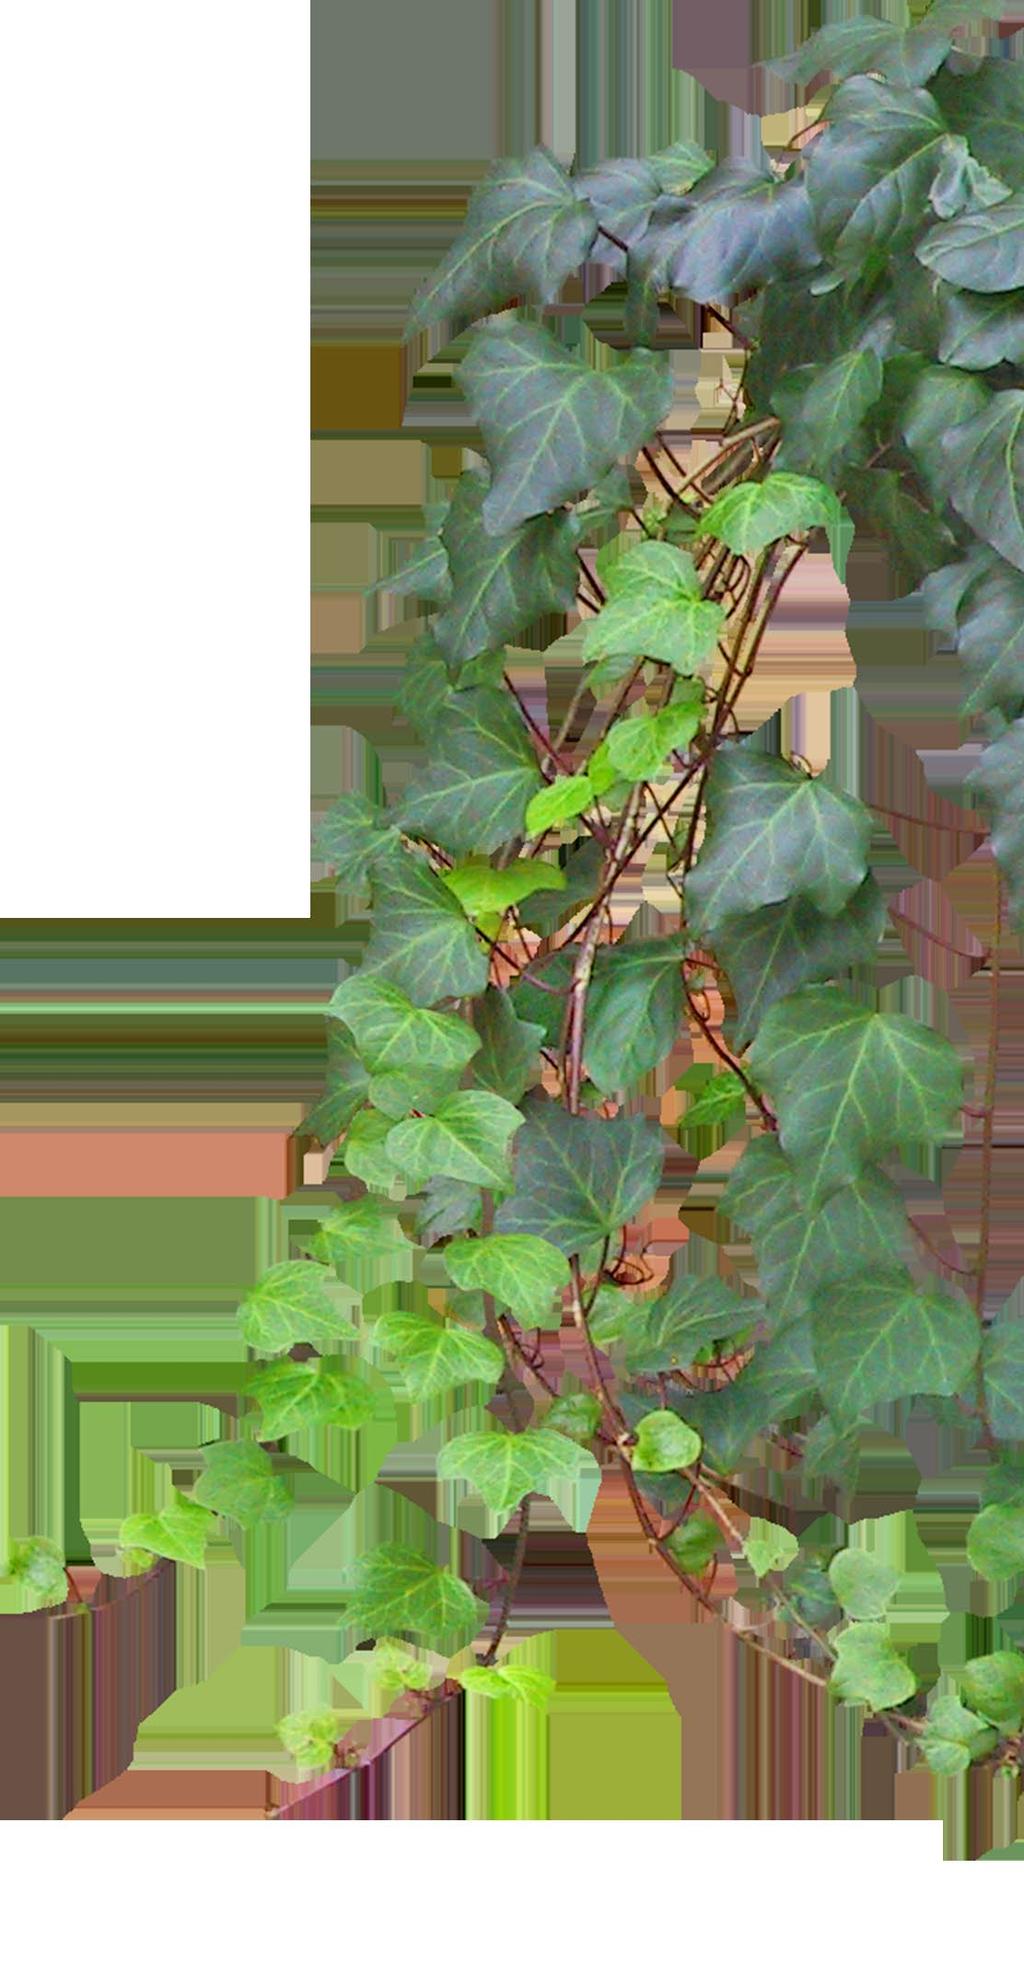 Klimop wordt in de regel aangeplant met een lengte van tussen de 2 en 3,5 m en groeit daarna gemiddeld met 0,5